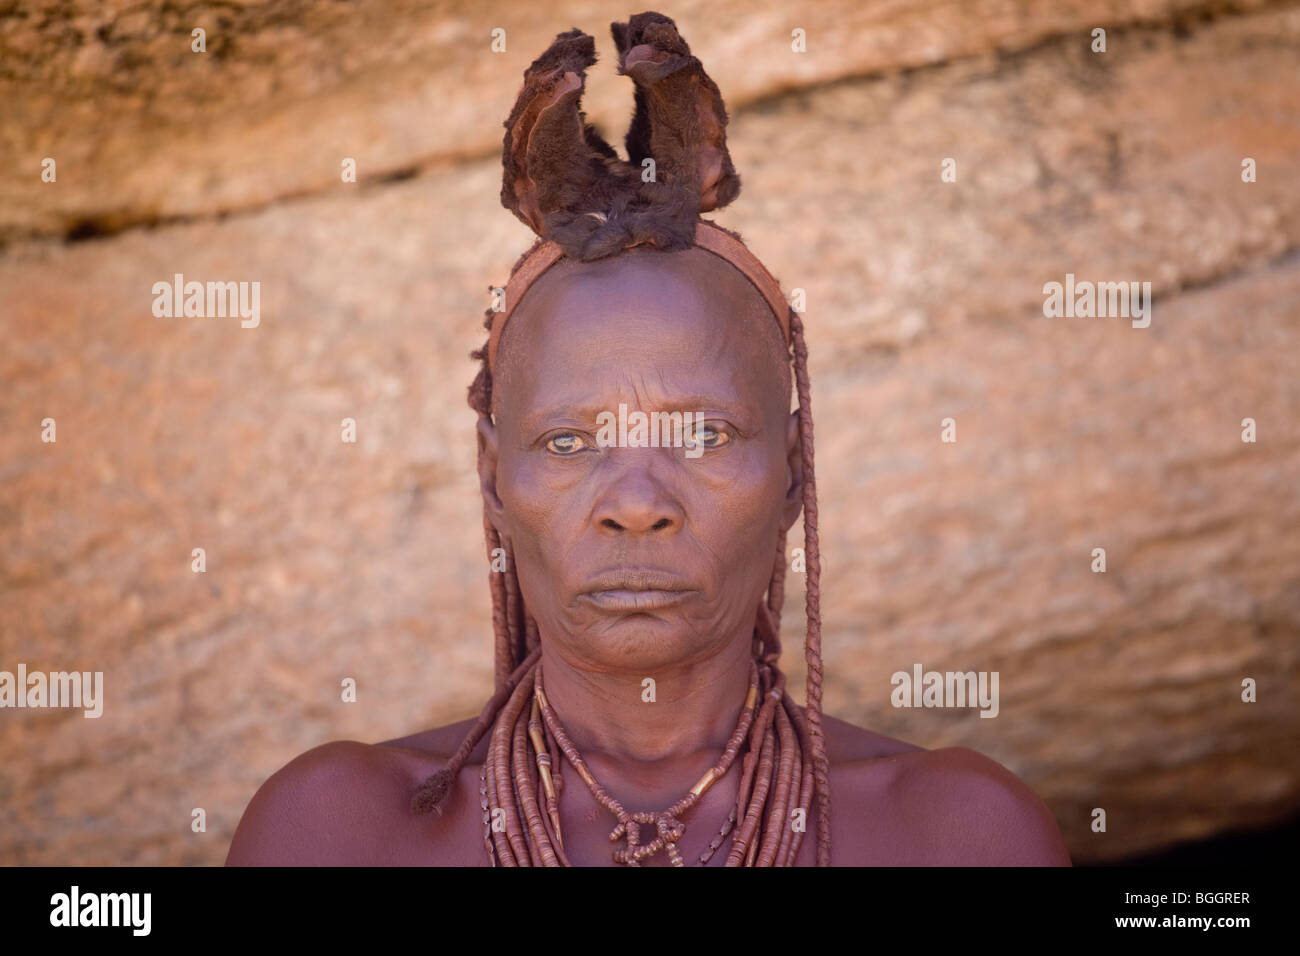 Femme de la tribu Himba, le nord de la Namibie Banque D'Images